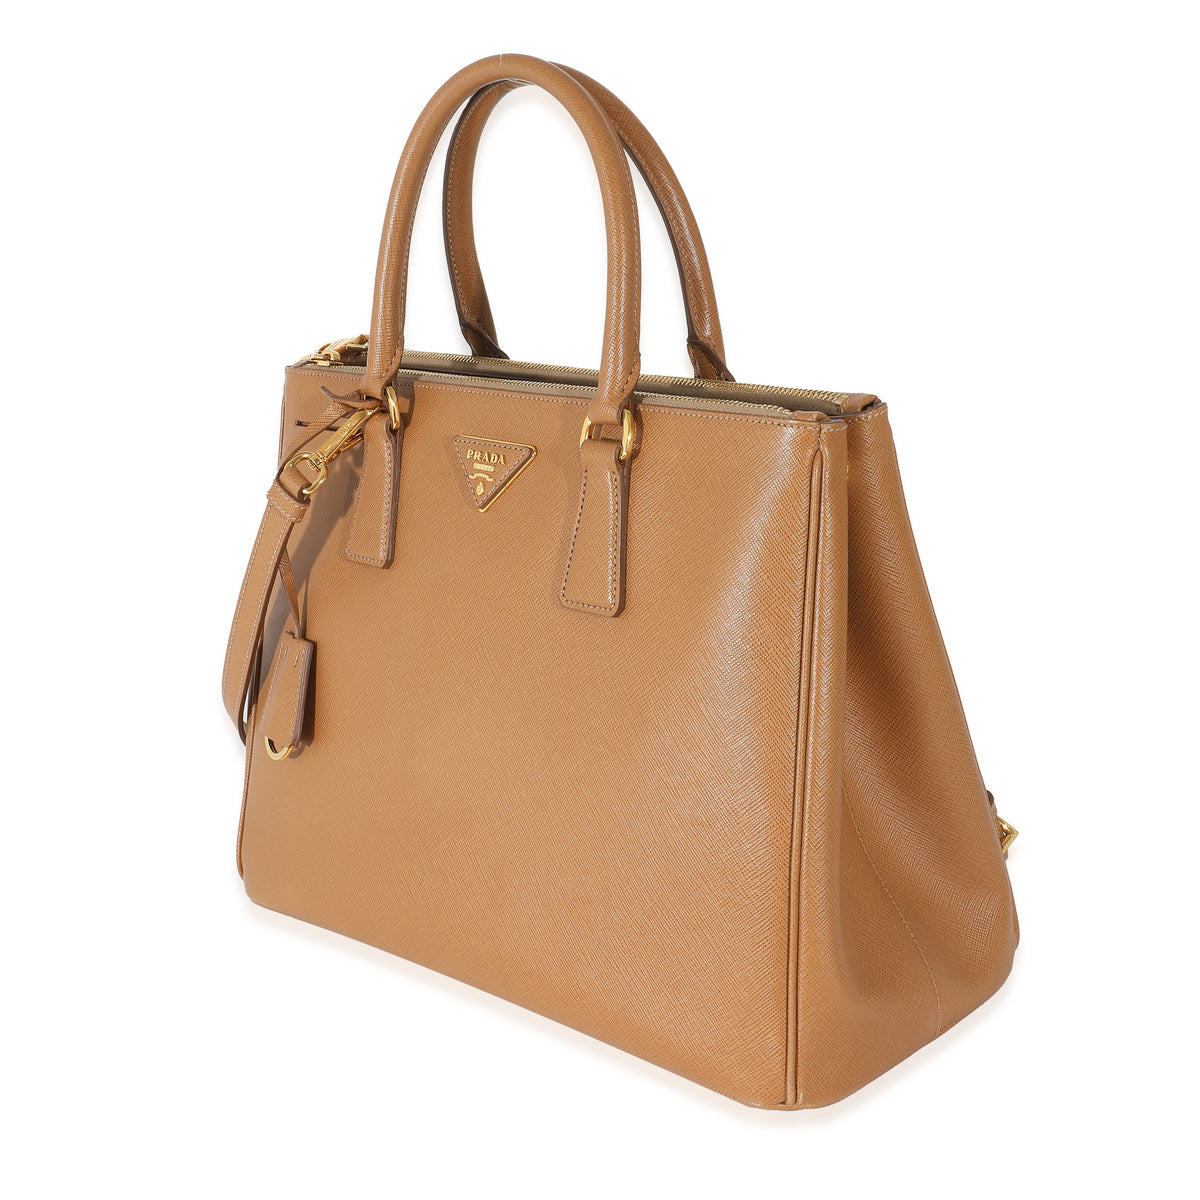 Prada Medium Galleria Saffiano Leather Bag in Orange